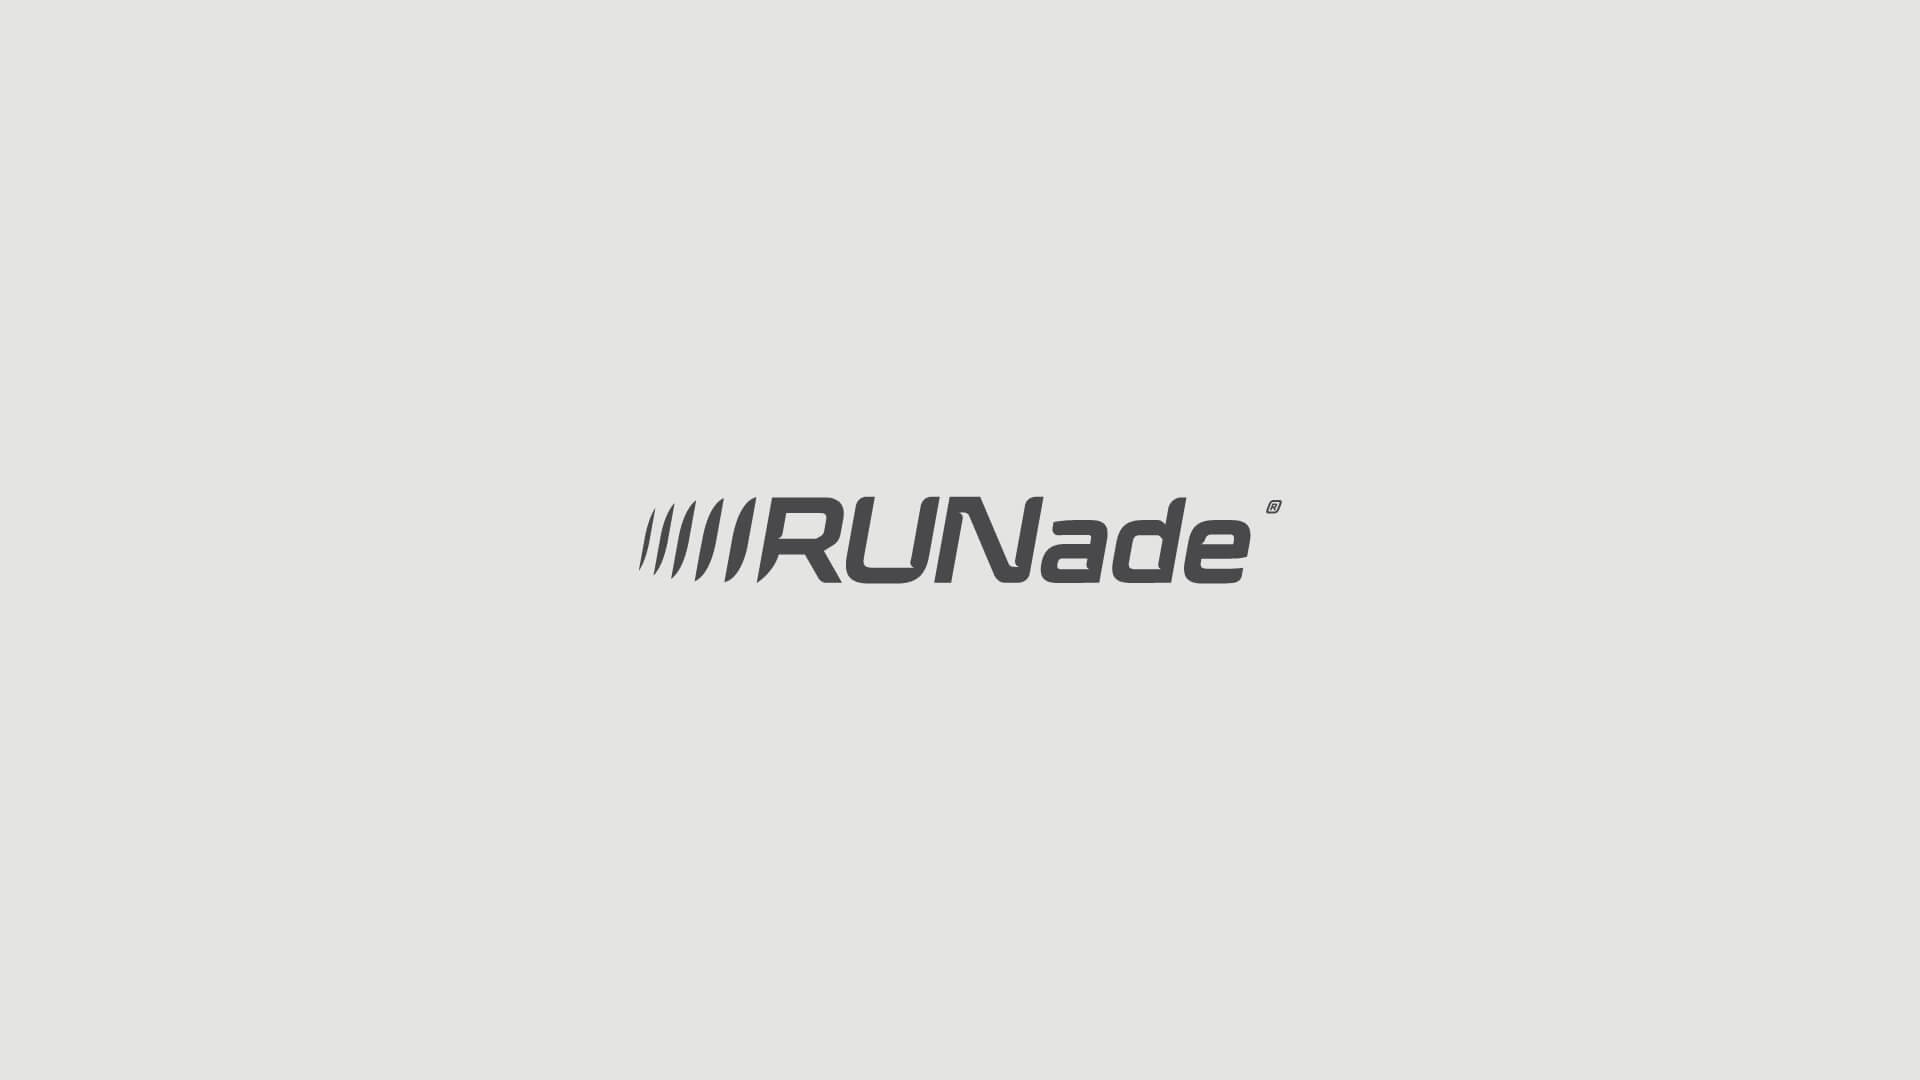 Runade_logo_2